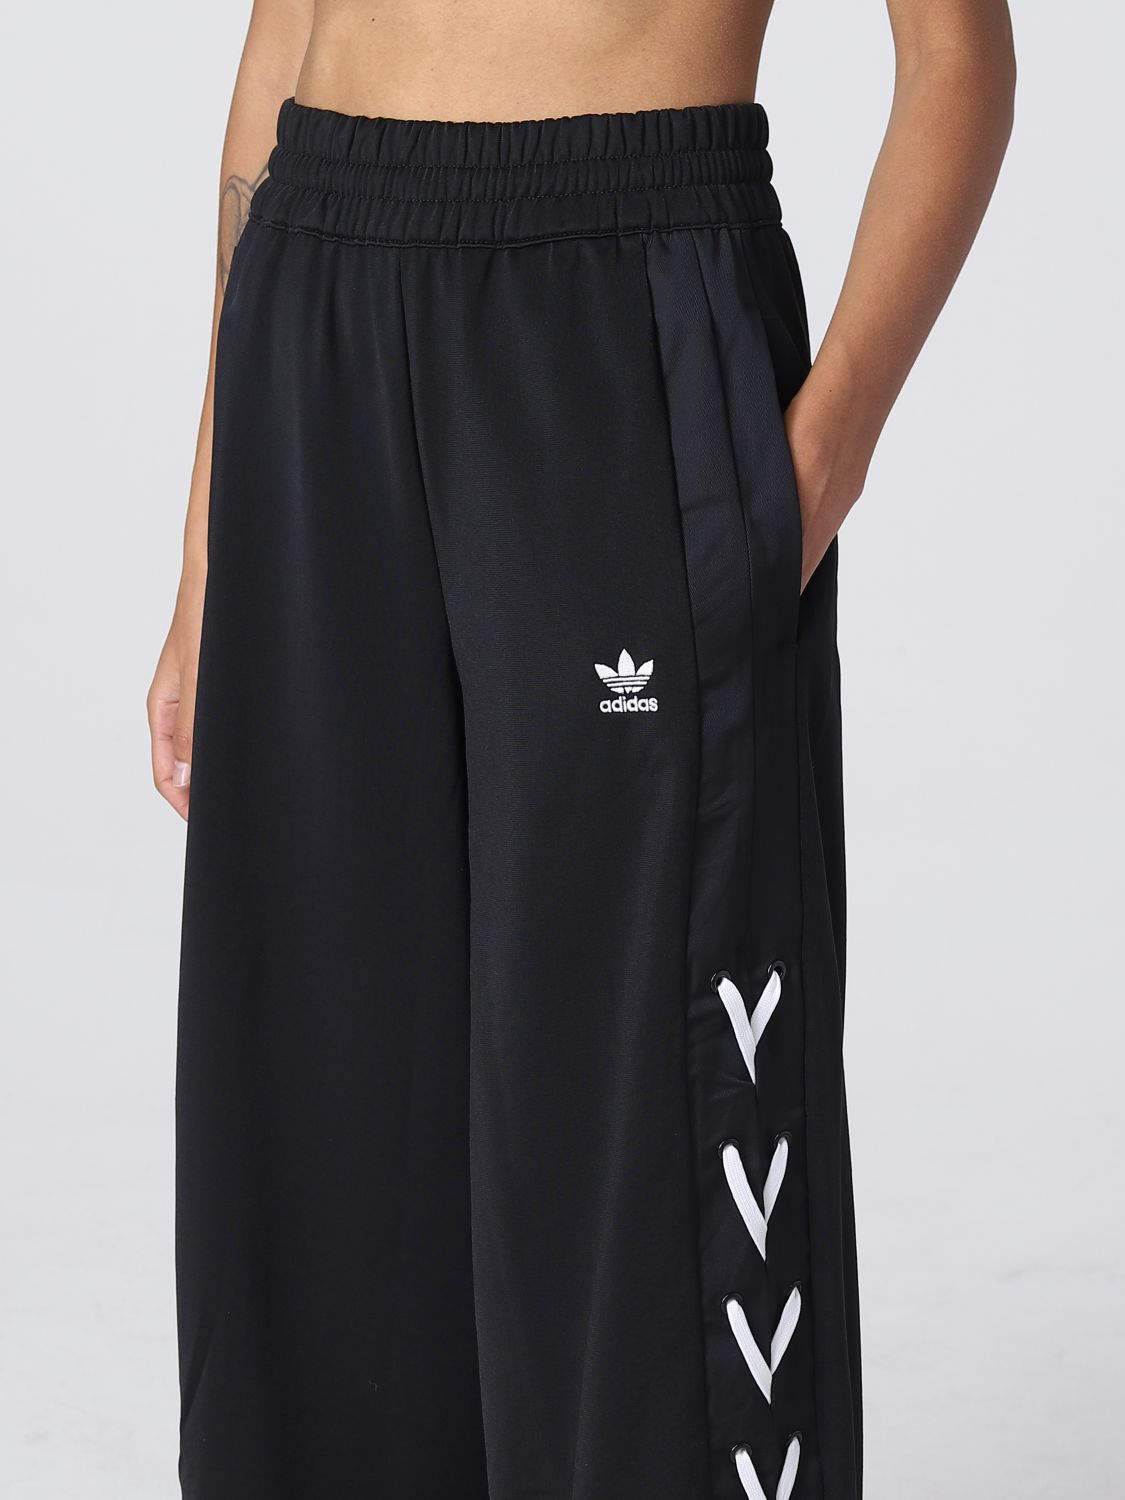 Del Norte matiz De nada ADIDAS ORIGINALS: Pantalón para mujer, Negro | PantalÓN Adidas Originals  HK5085 en línea en GIGLIO.COM